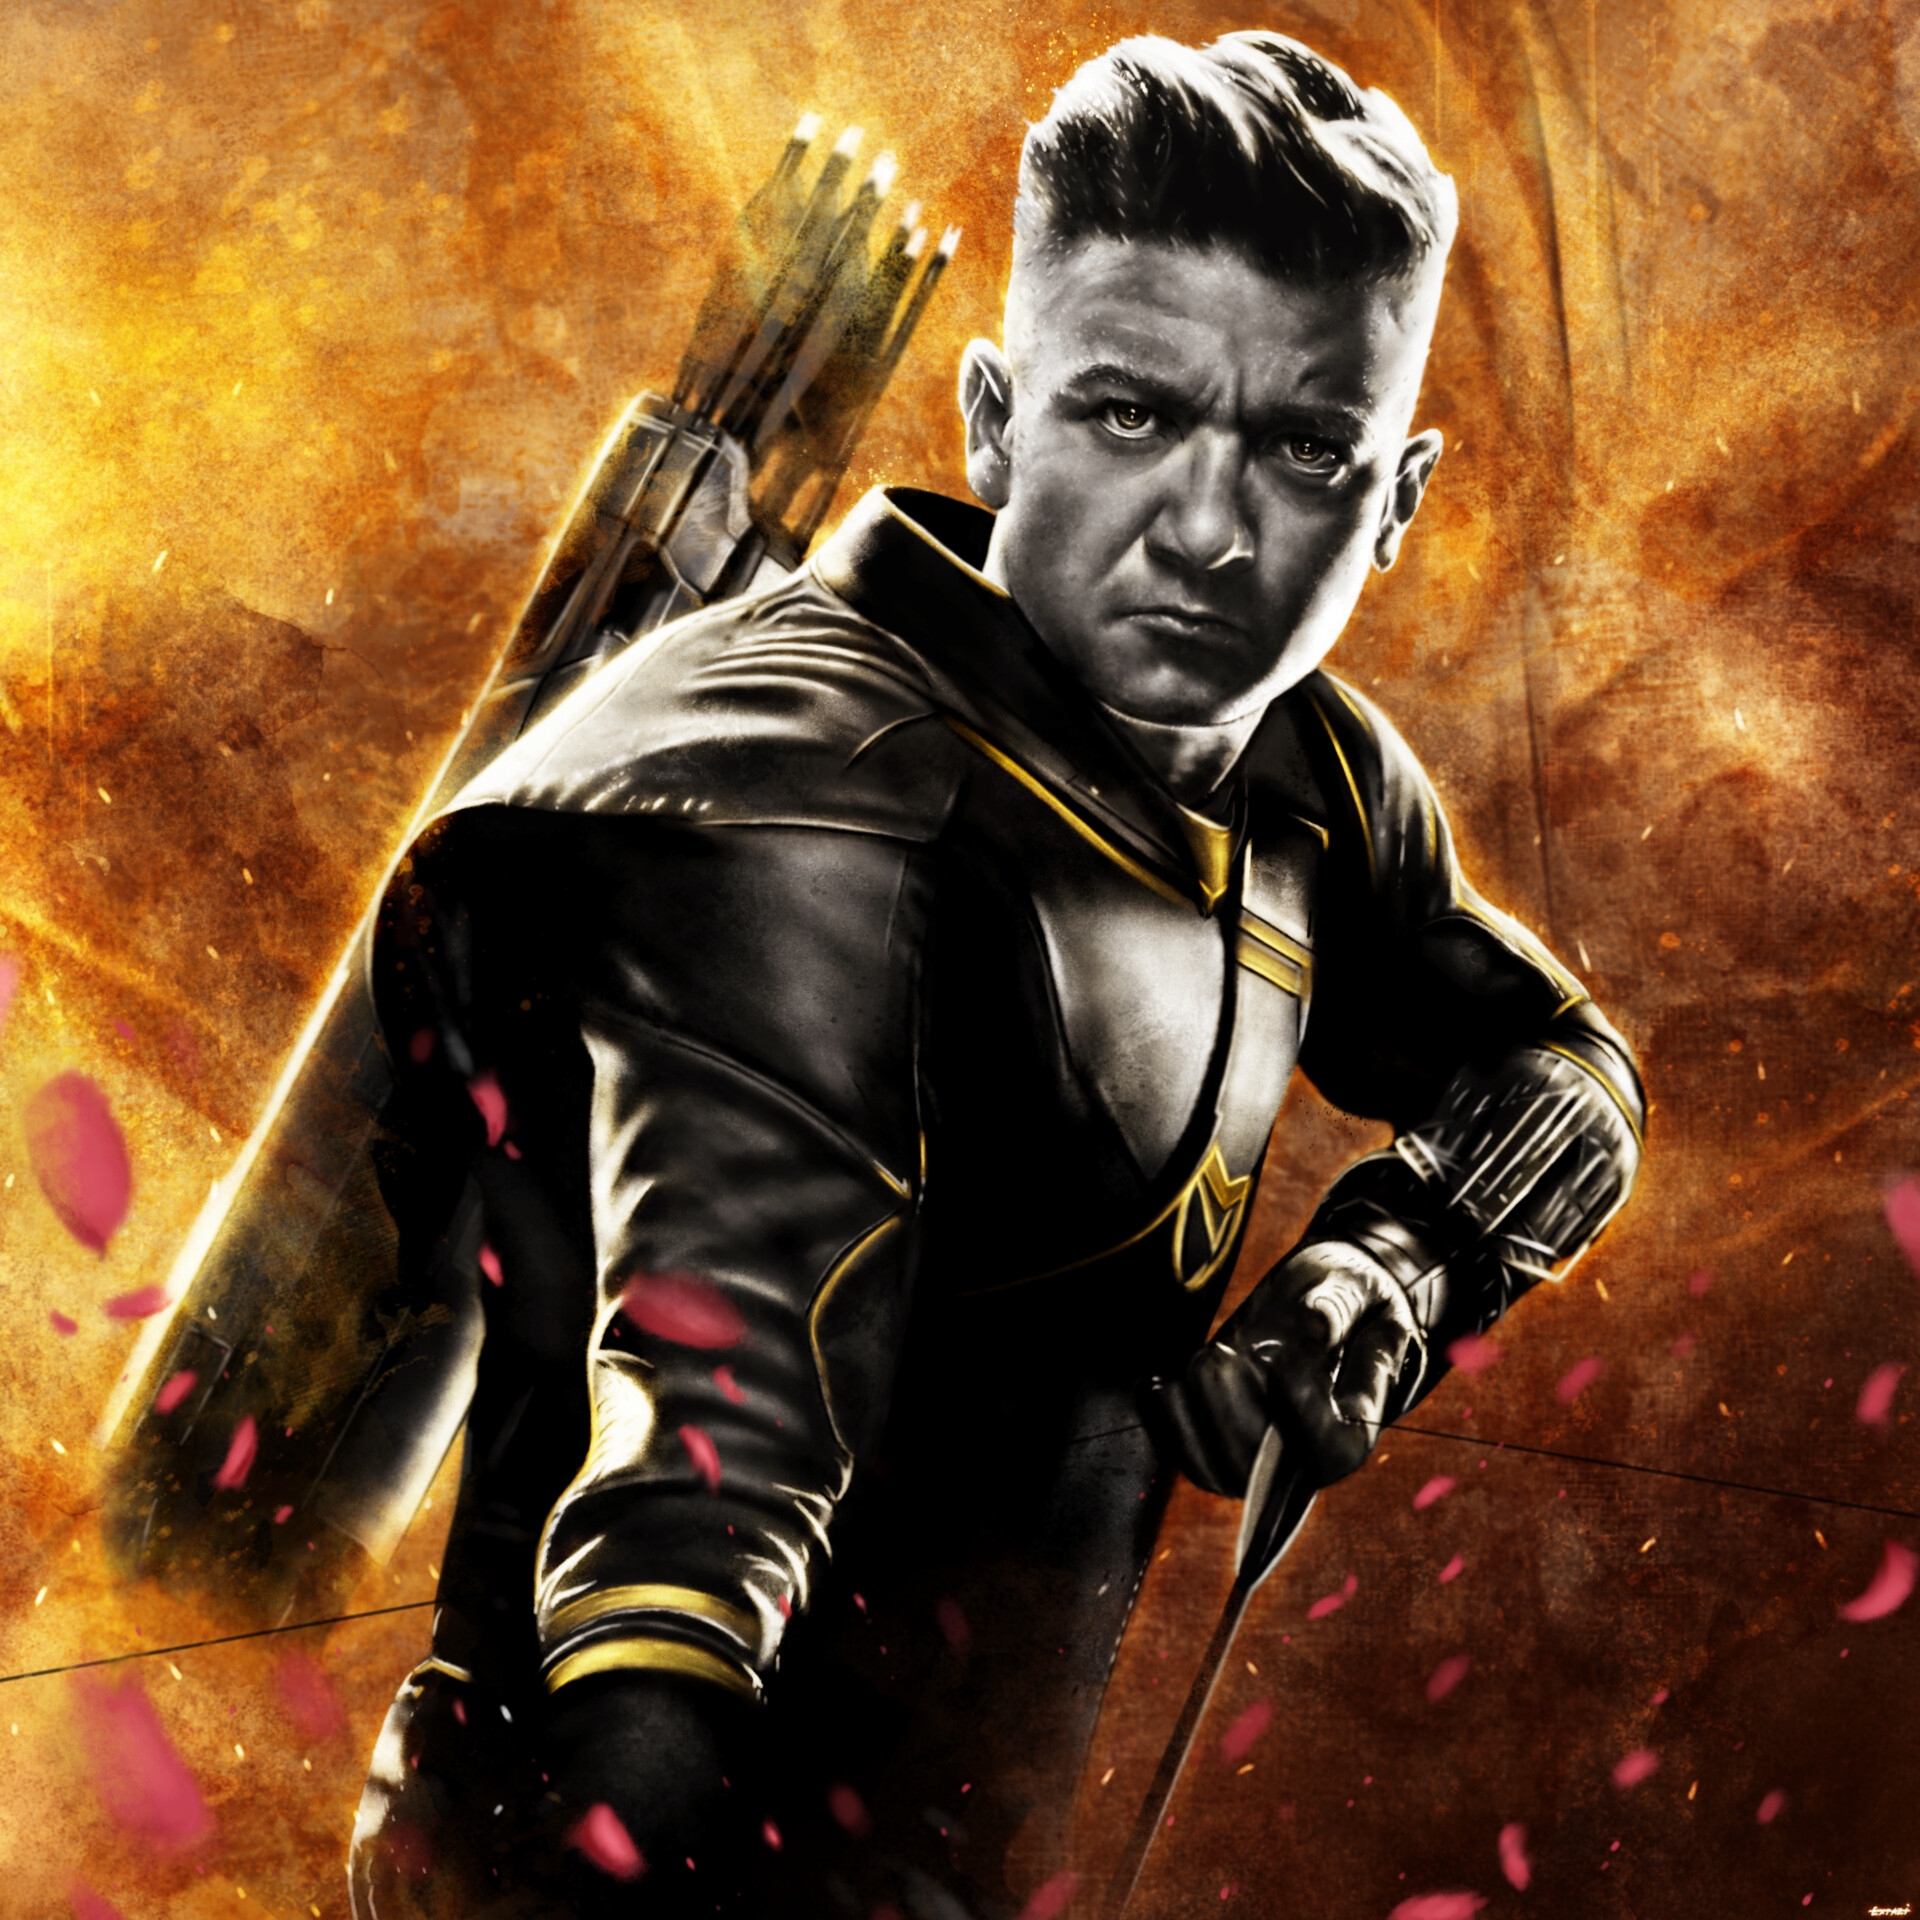 Avengers Endgame Jeremy Renner As Ronin Artwork Wallpapers